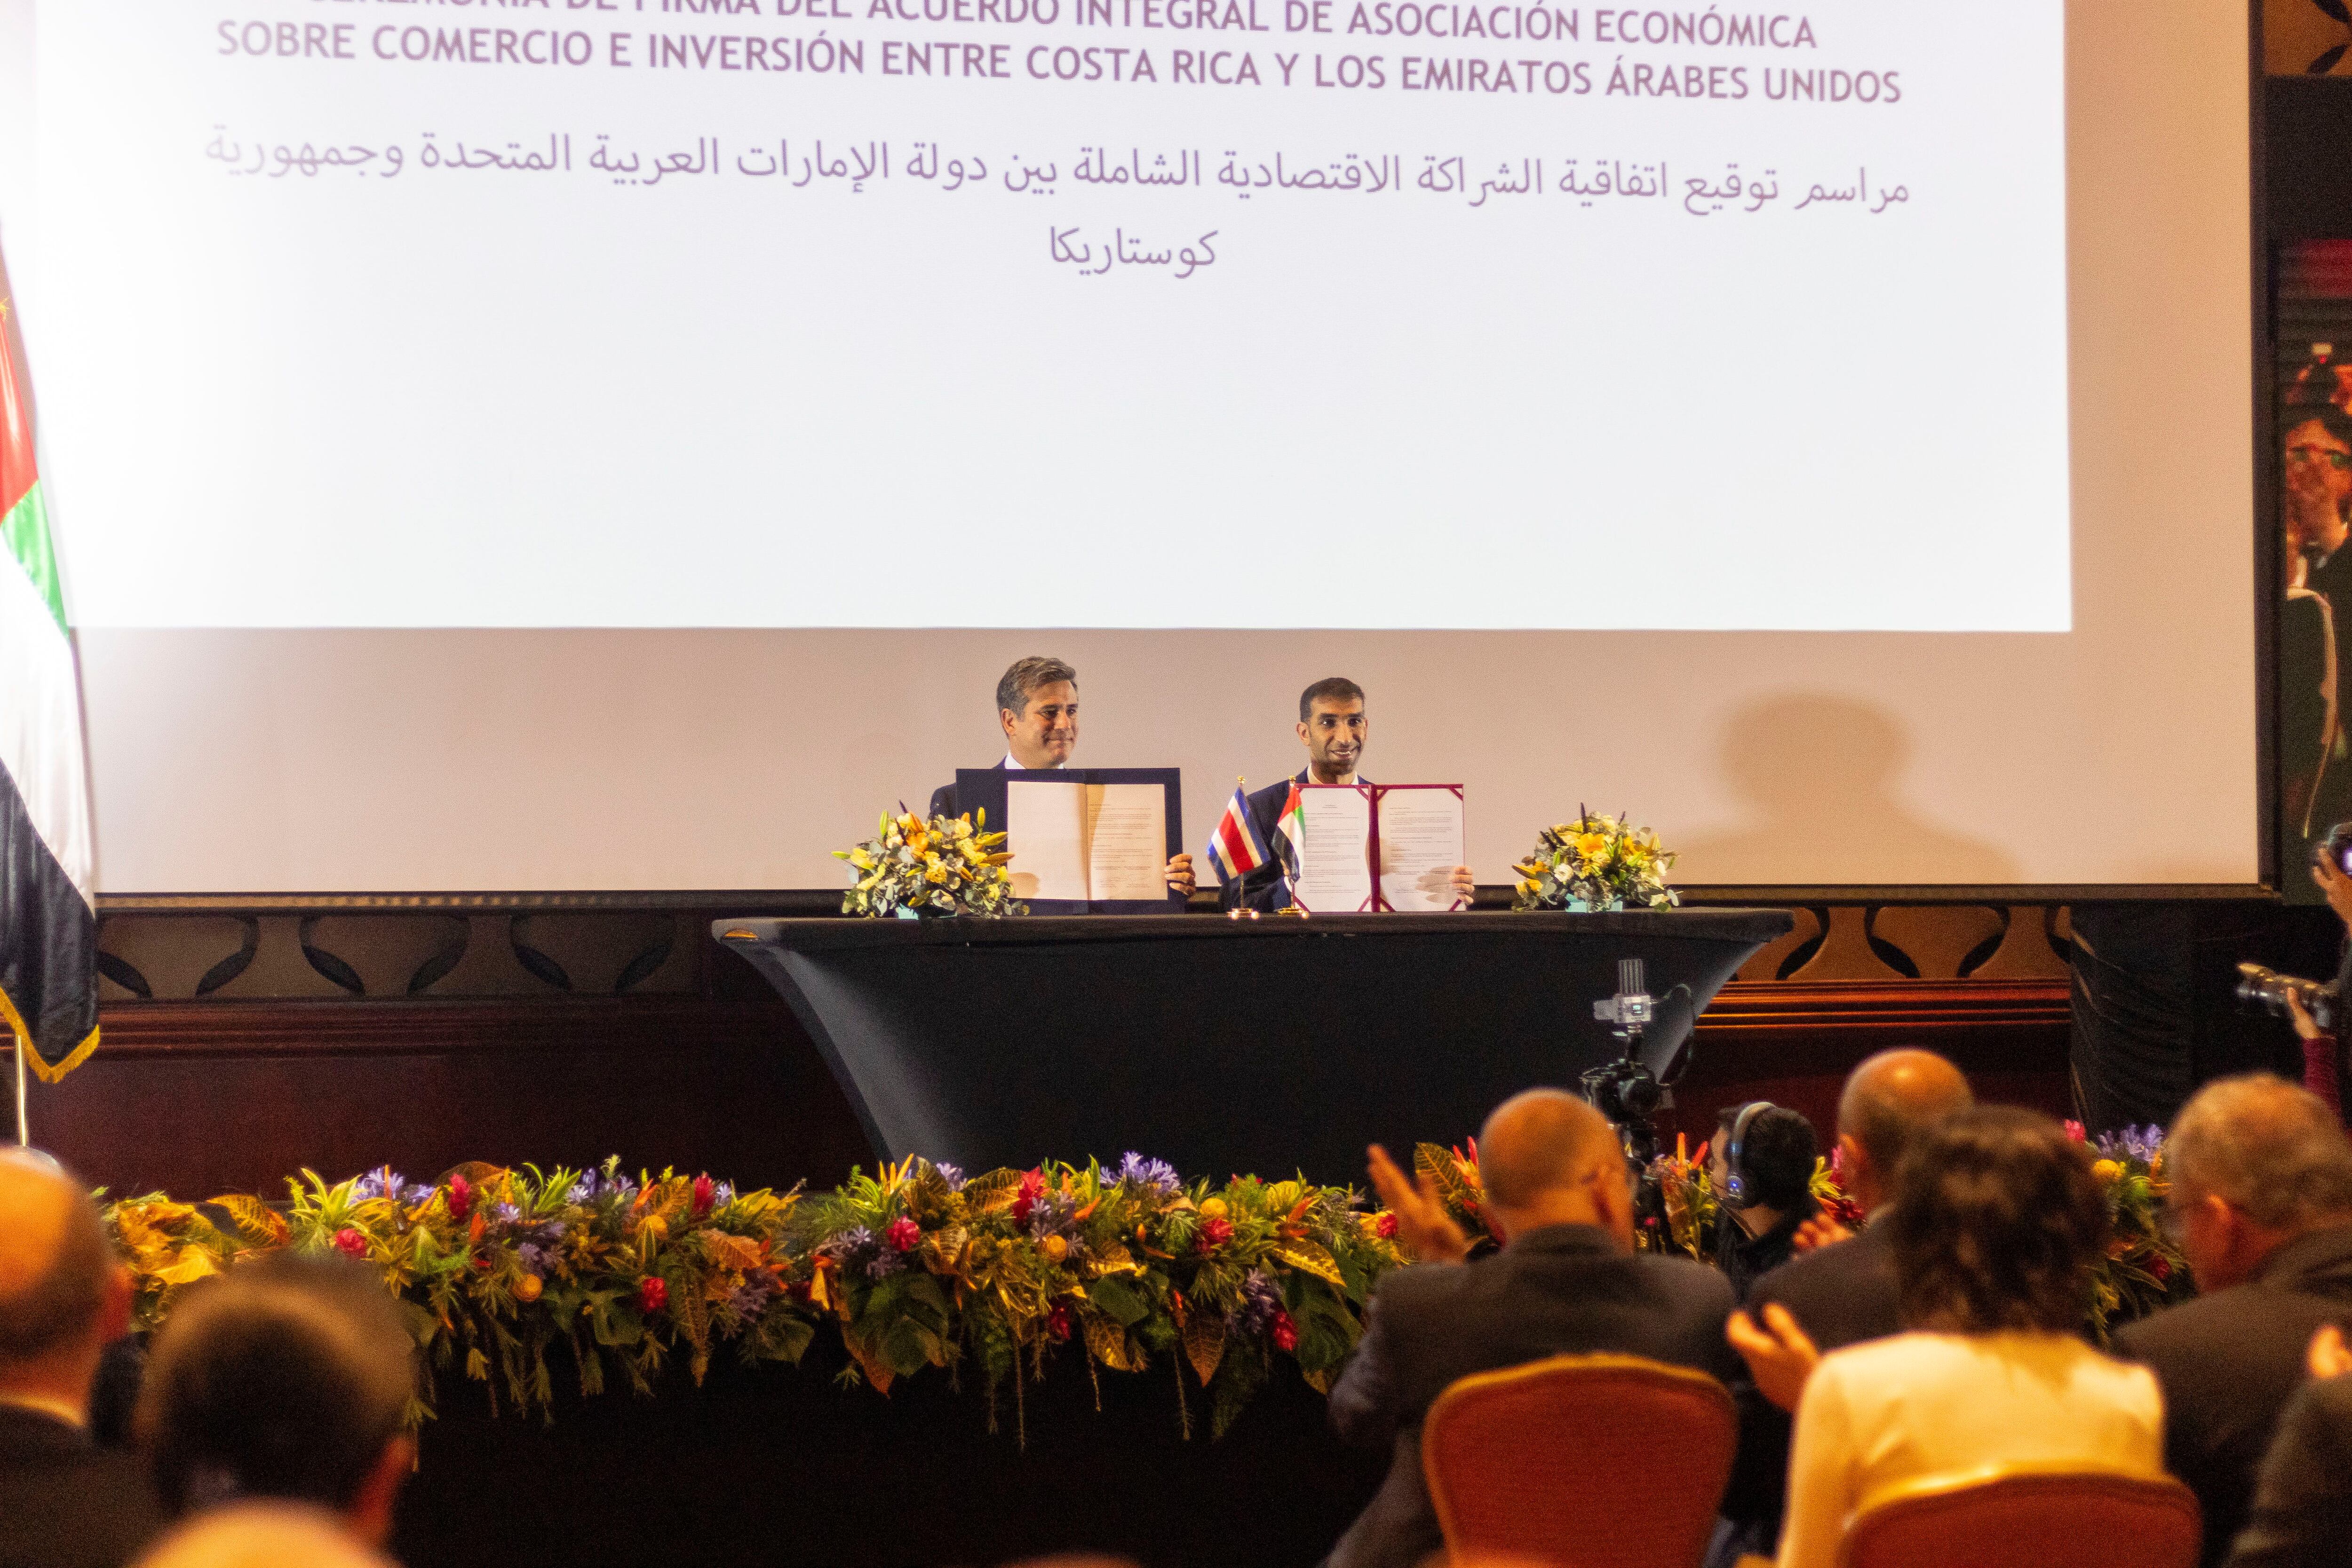 El 17 de abril se realizó la ceremonia de firma del acuerdo entre Costa Rica y Emiratos Árabes Unidos, en el hotel Intercontinental, en Escazú, San José.
En la fotografía, el ministro de Comercio Exterior de Emiratos Árabes Unidos, Thani bin Ahmed Al Zeyoudi, junto al ministro de Comercio Exterior de Costa Rica, Manuel Tovar Rivera.